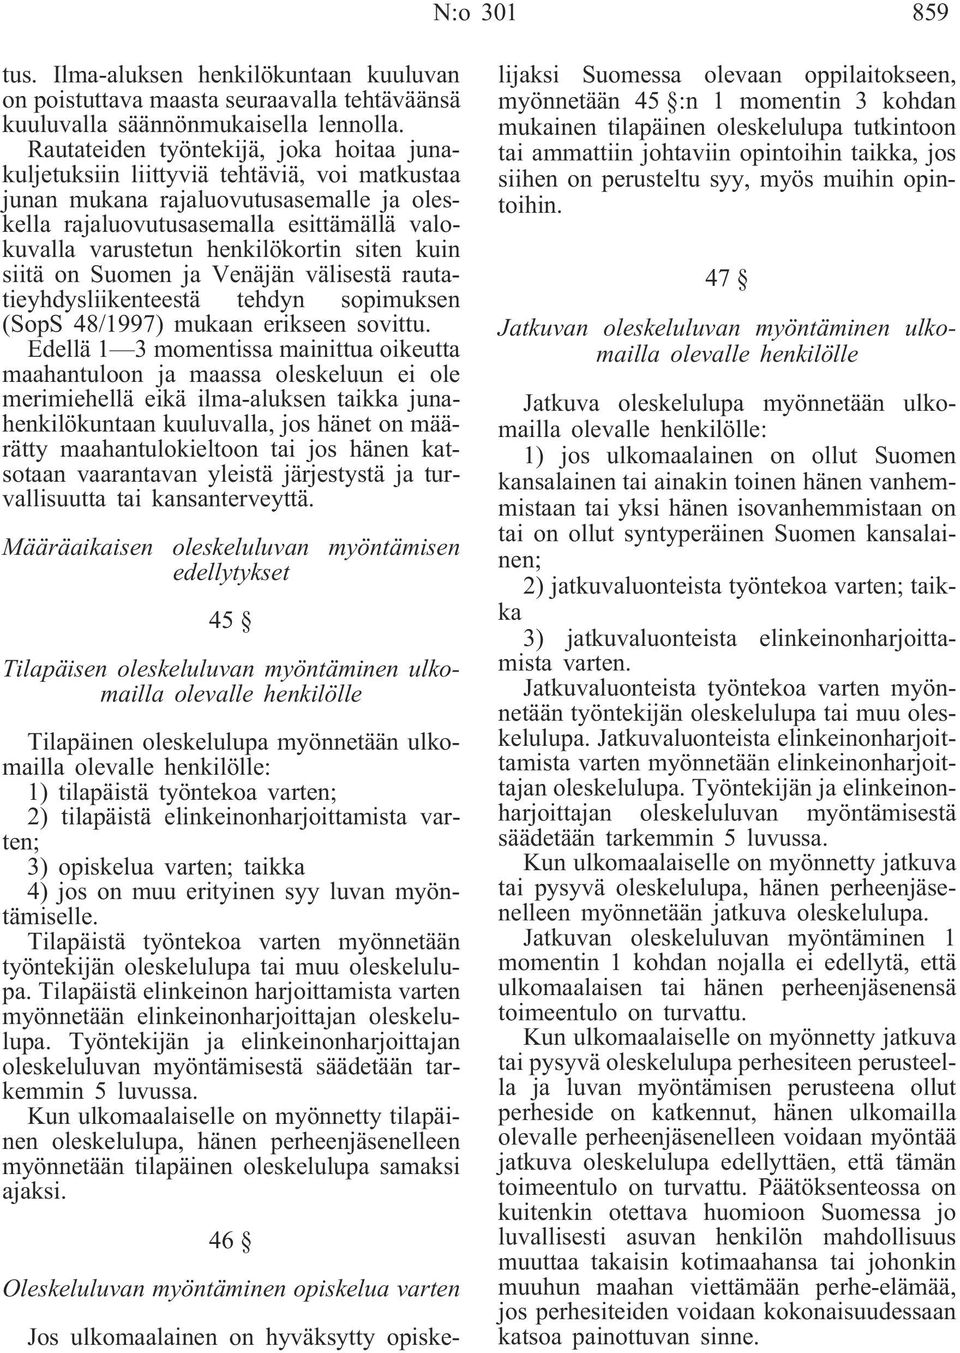 henkilökortin siten kuin siitä on Suomen ja Venäjän välisestä rautatieyhdysliikenteestä tehdyn sopimuksen (SopS 48/1997) mukaan erikseen sovittu.